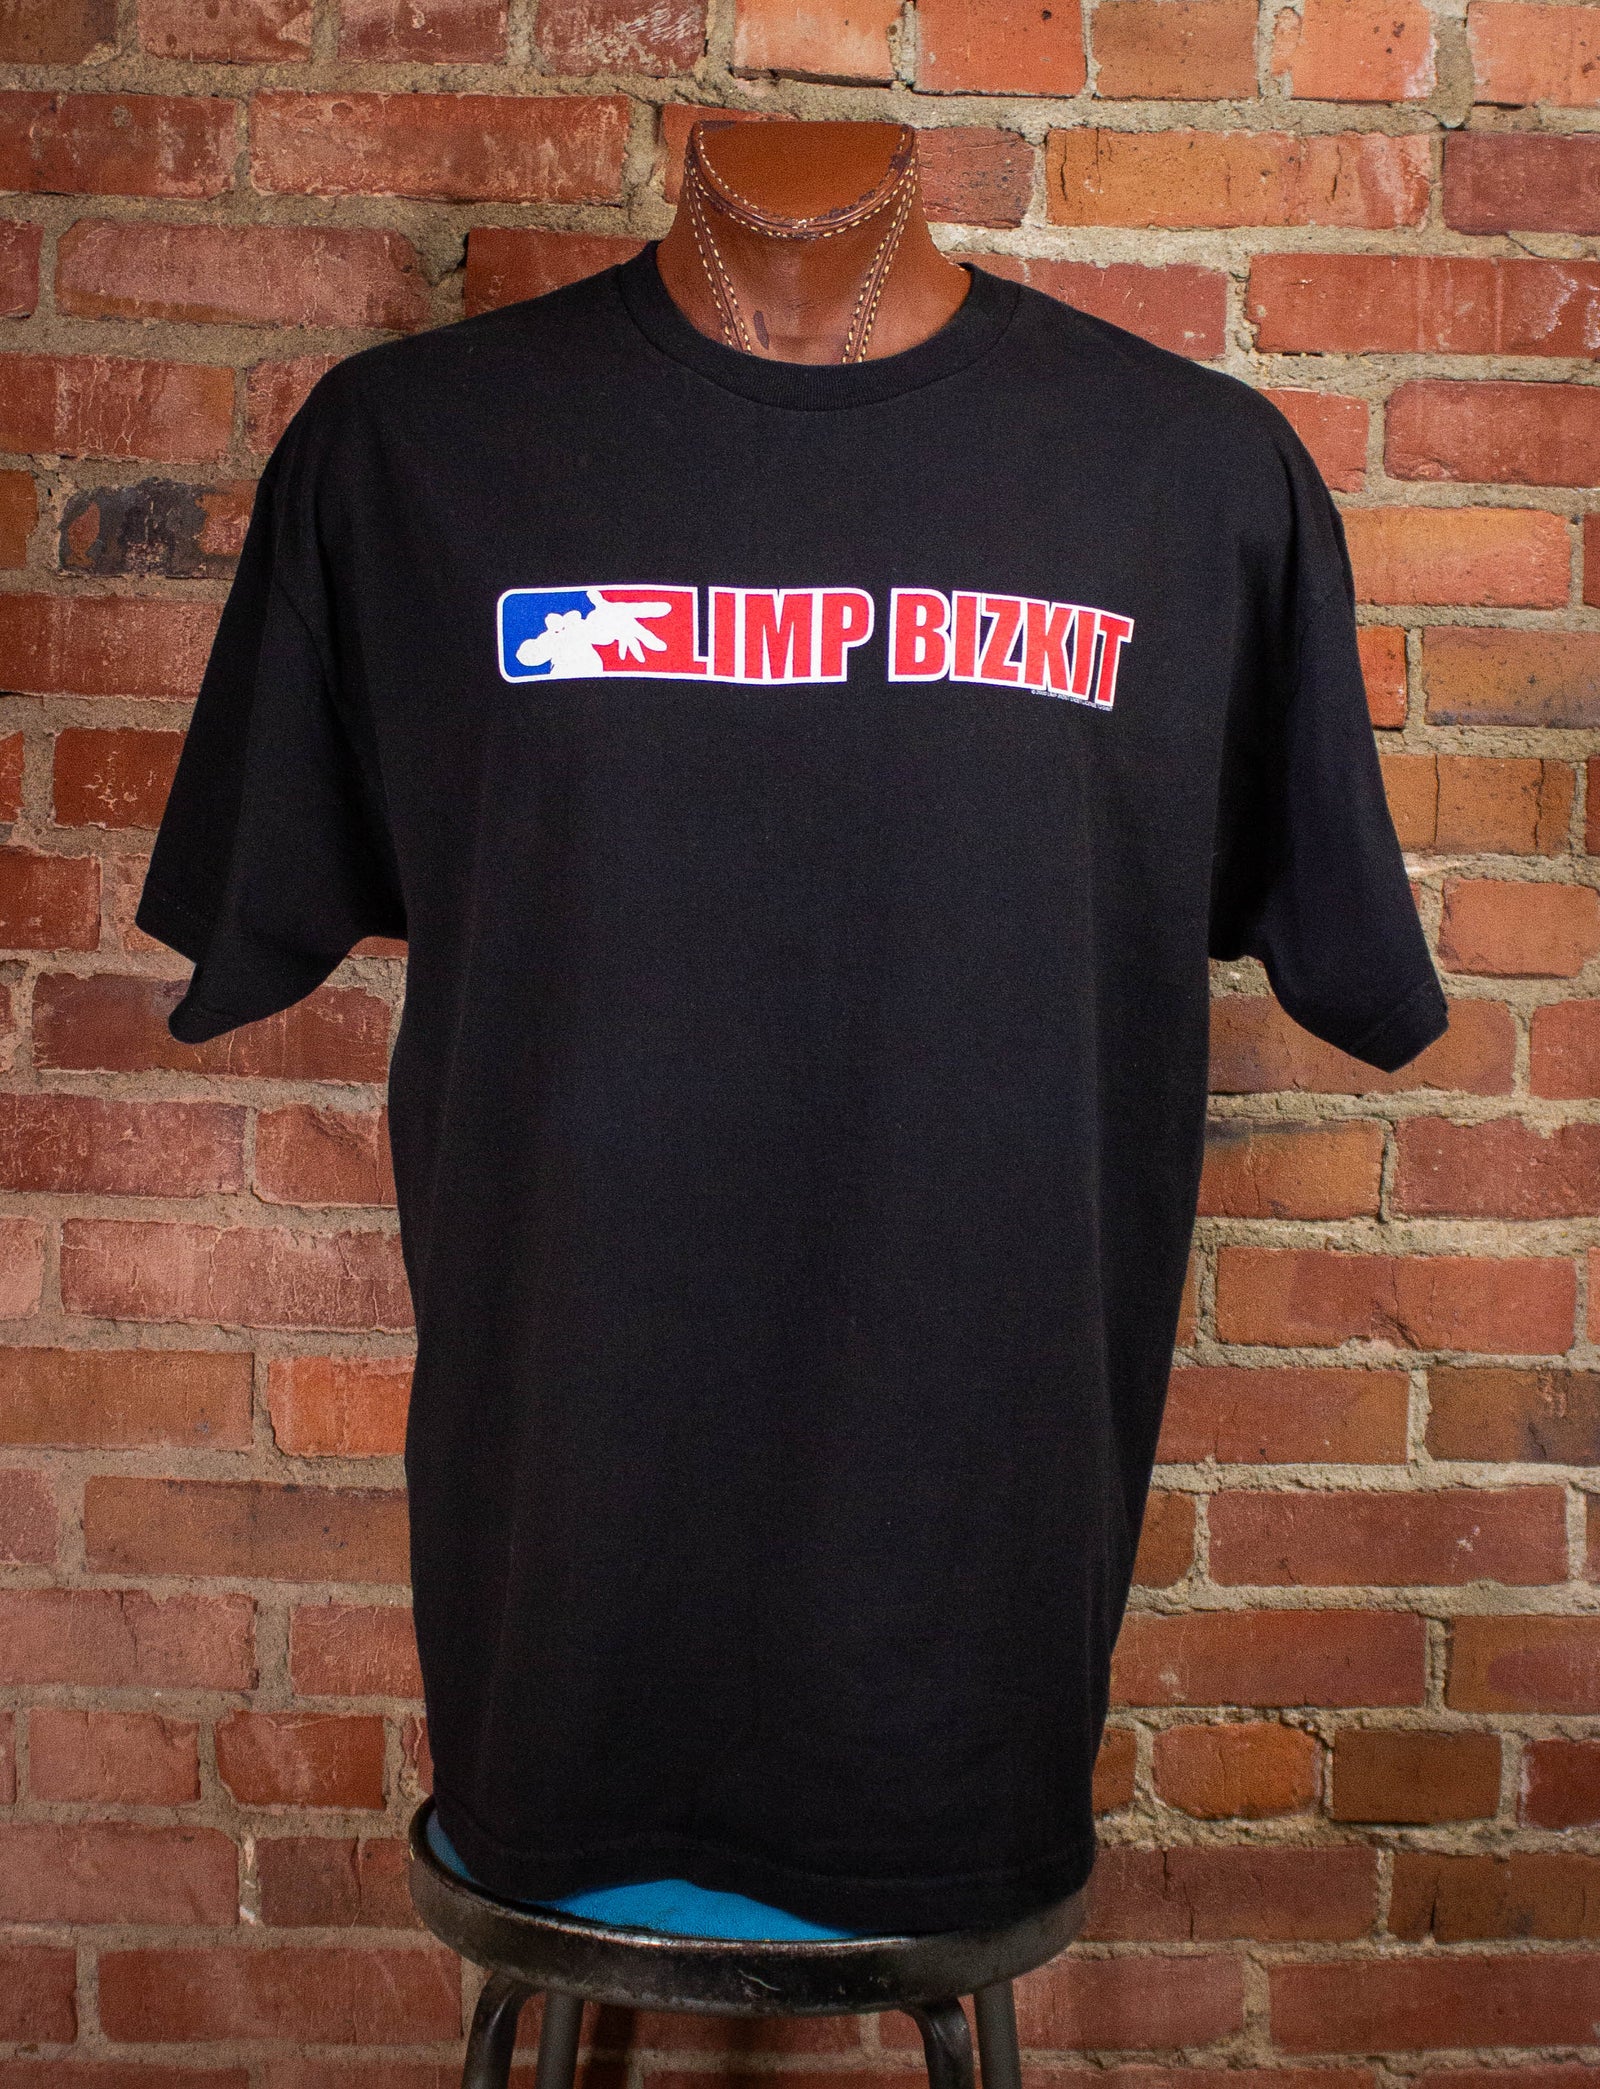 Vintage Limp Bizkit Anger Management Tour Concert T Shirt 2000 Black 2XL